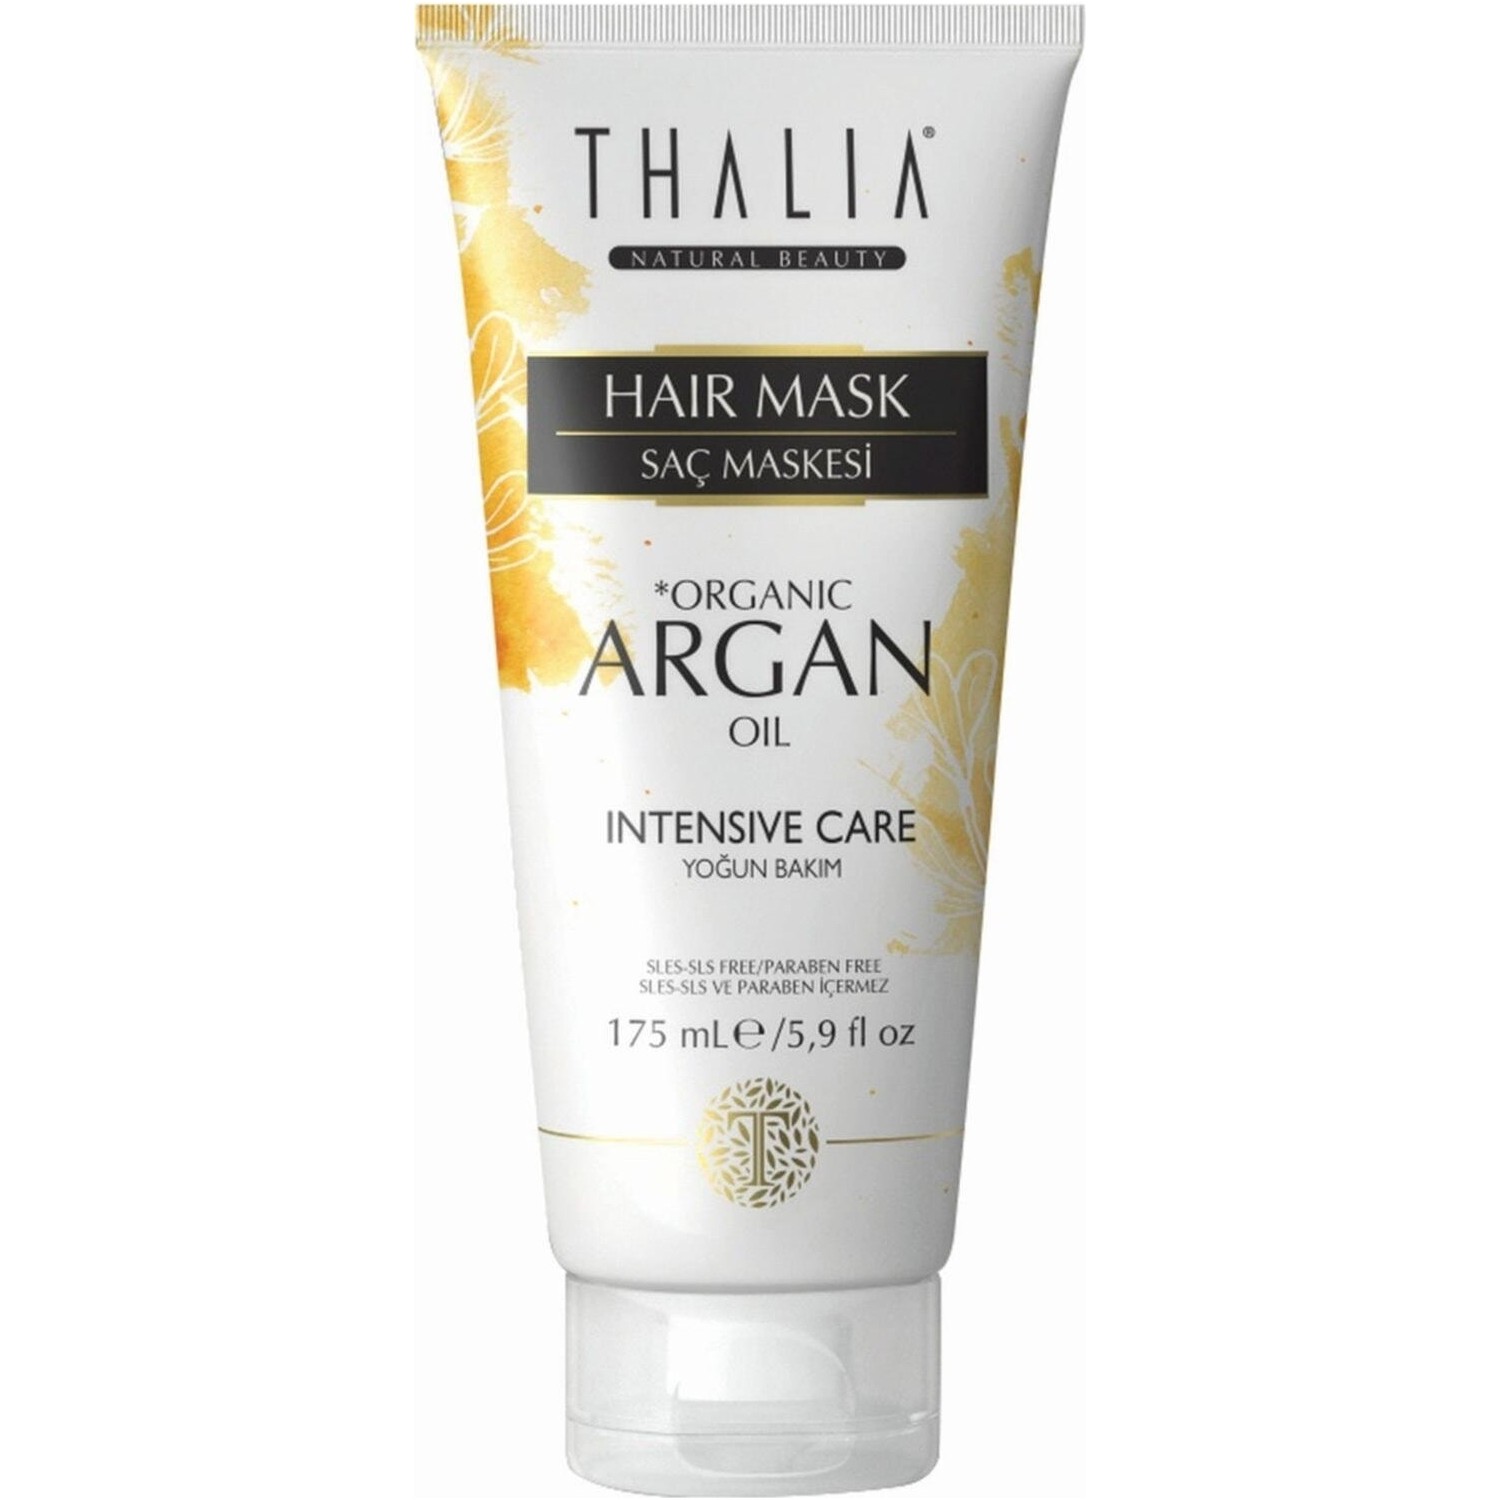 Увлажняющая маска Thalia Organic Argan Oil для волос, 175 мл маска для волос agadir маска для волос увлажняющая с аргановым маслом argan oil moisture masque